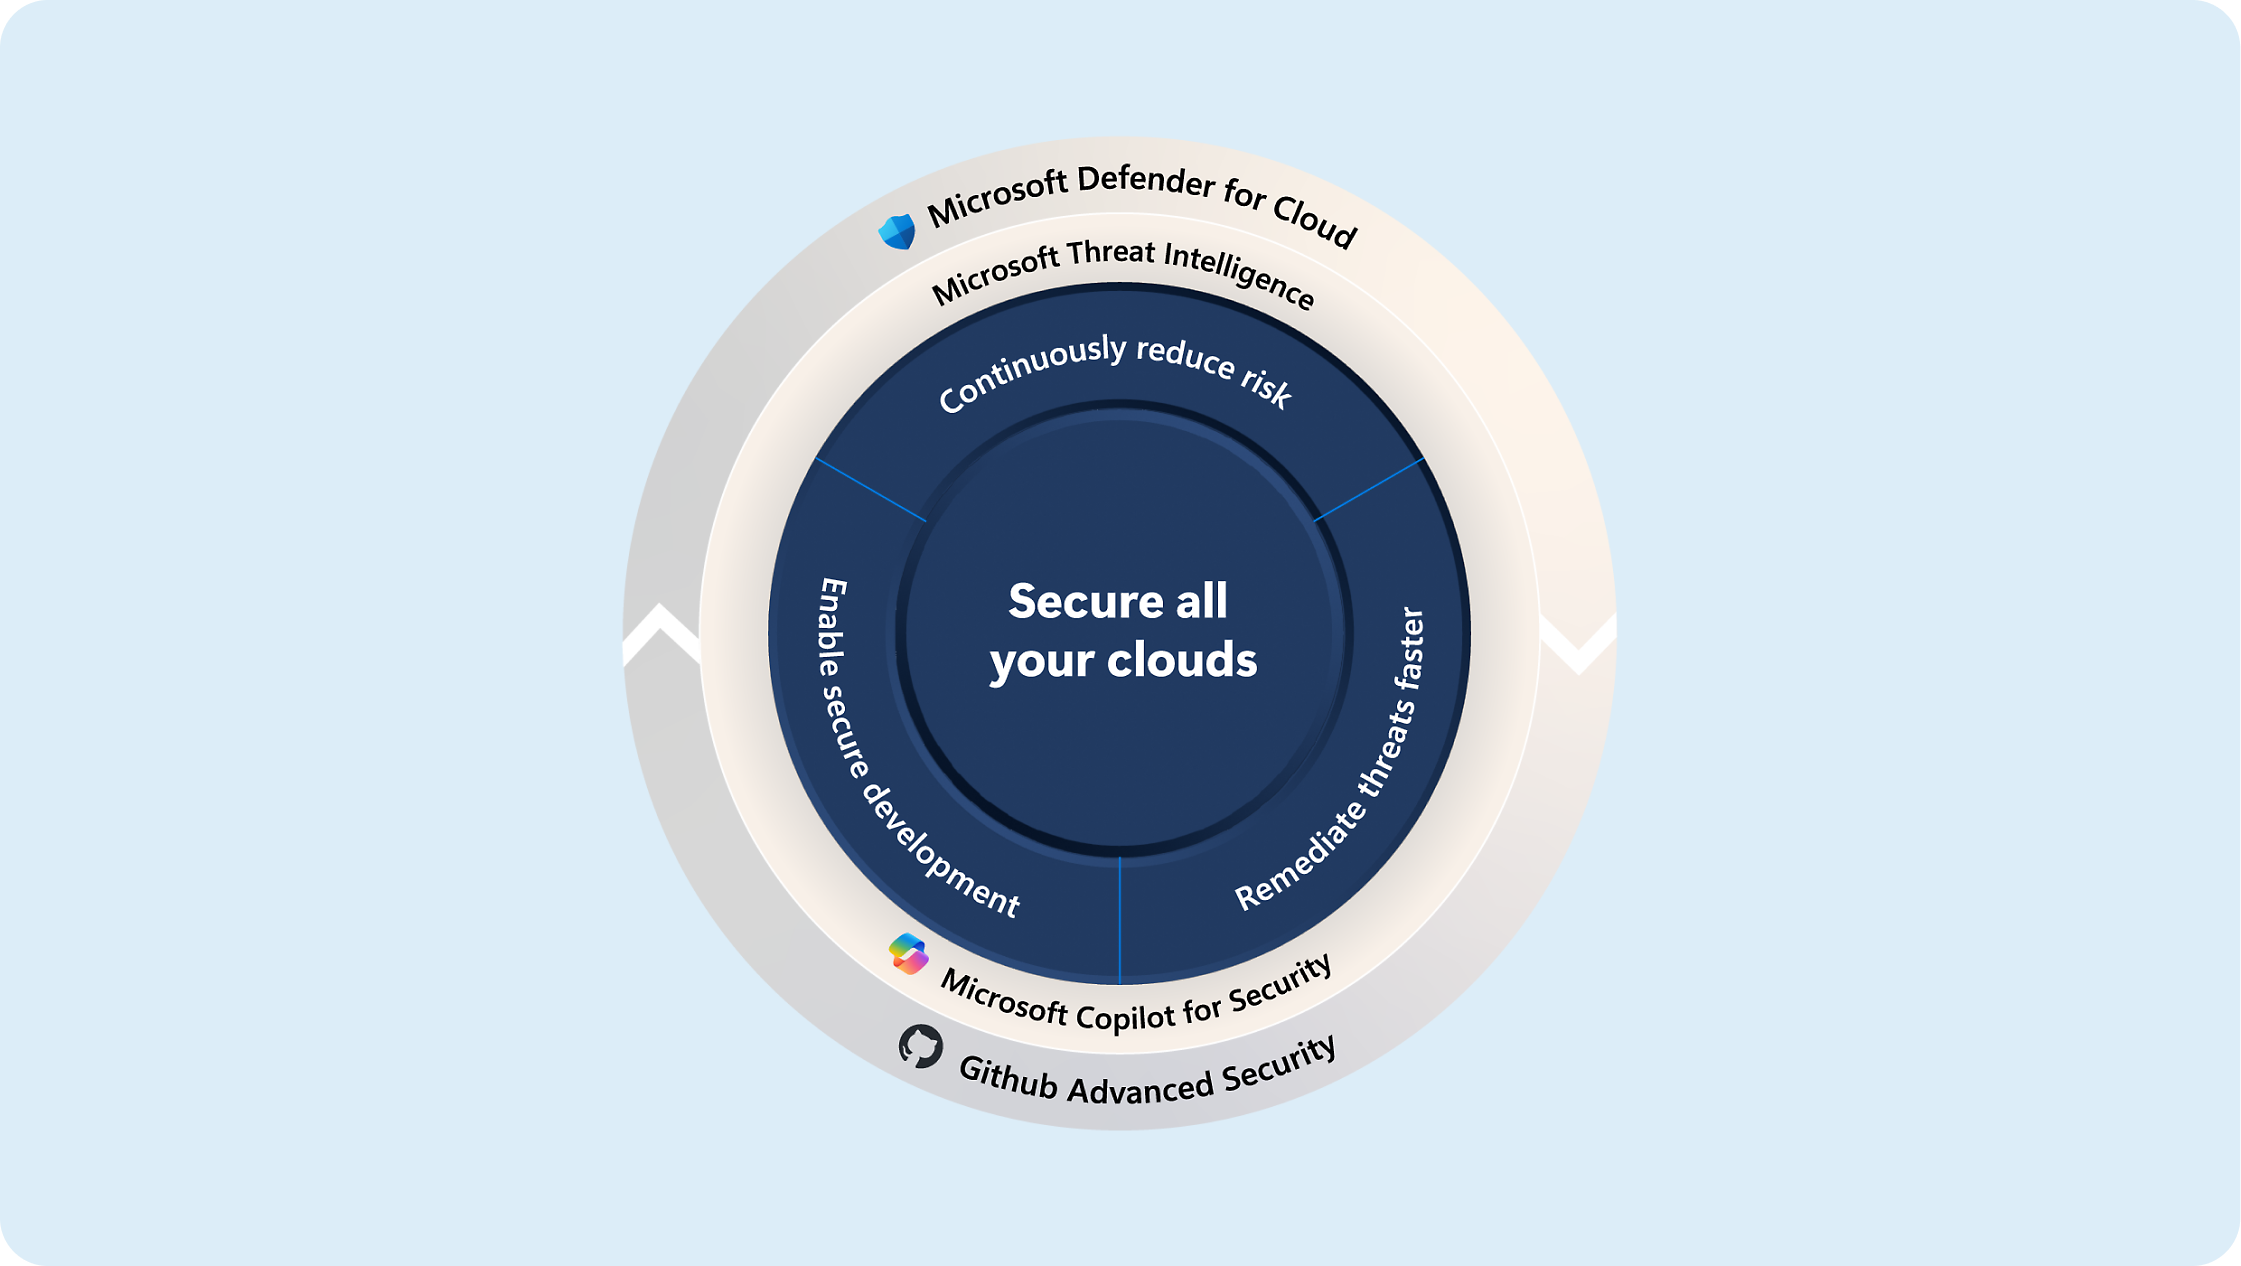 Diagrama que mostra estratégias para proteger as clouds com o microsoft defender, informações sobre ameaças, copilot para security